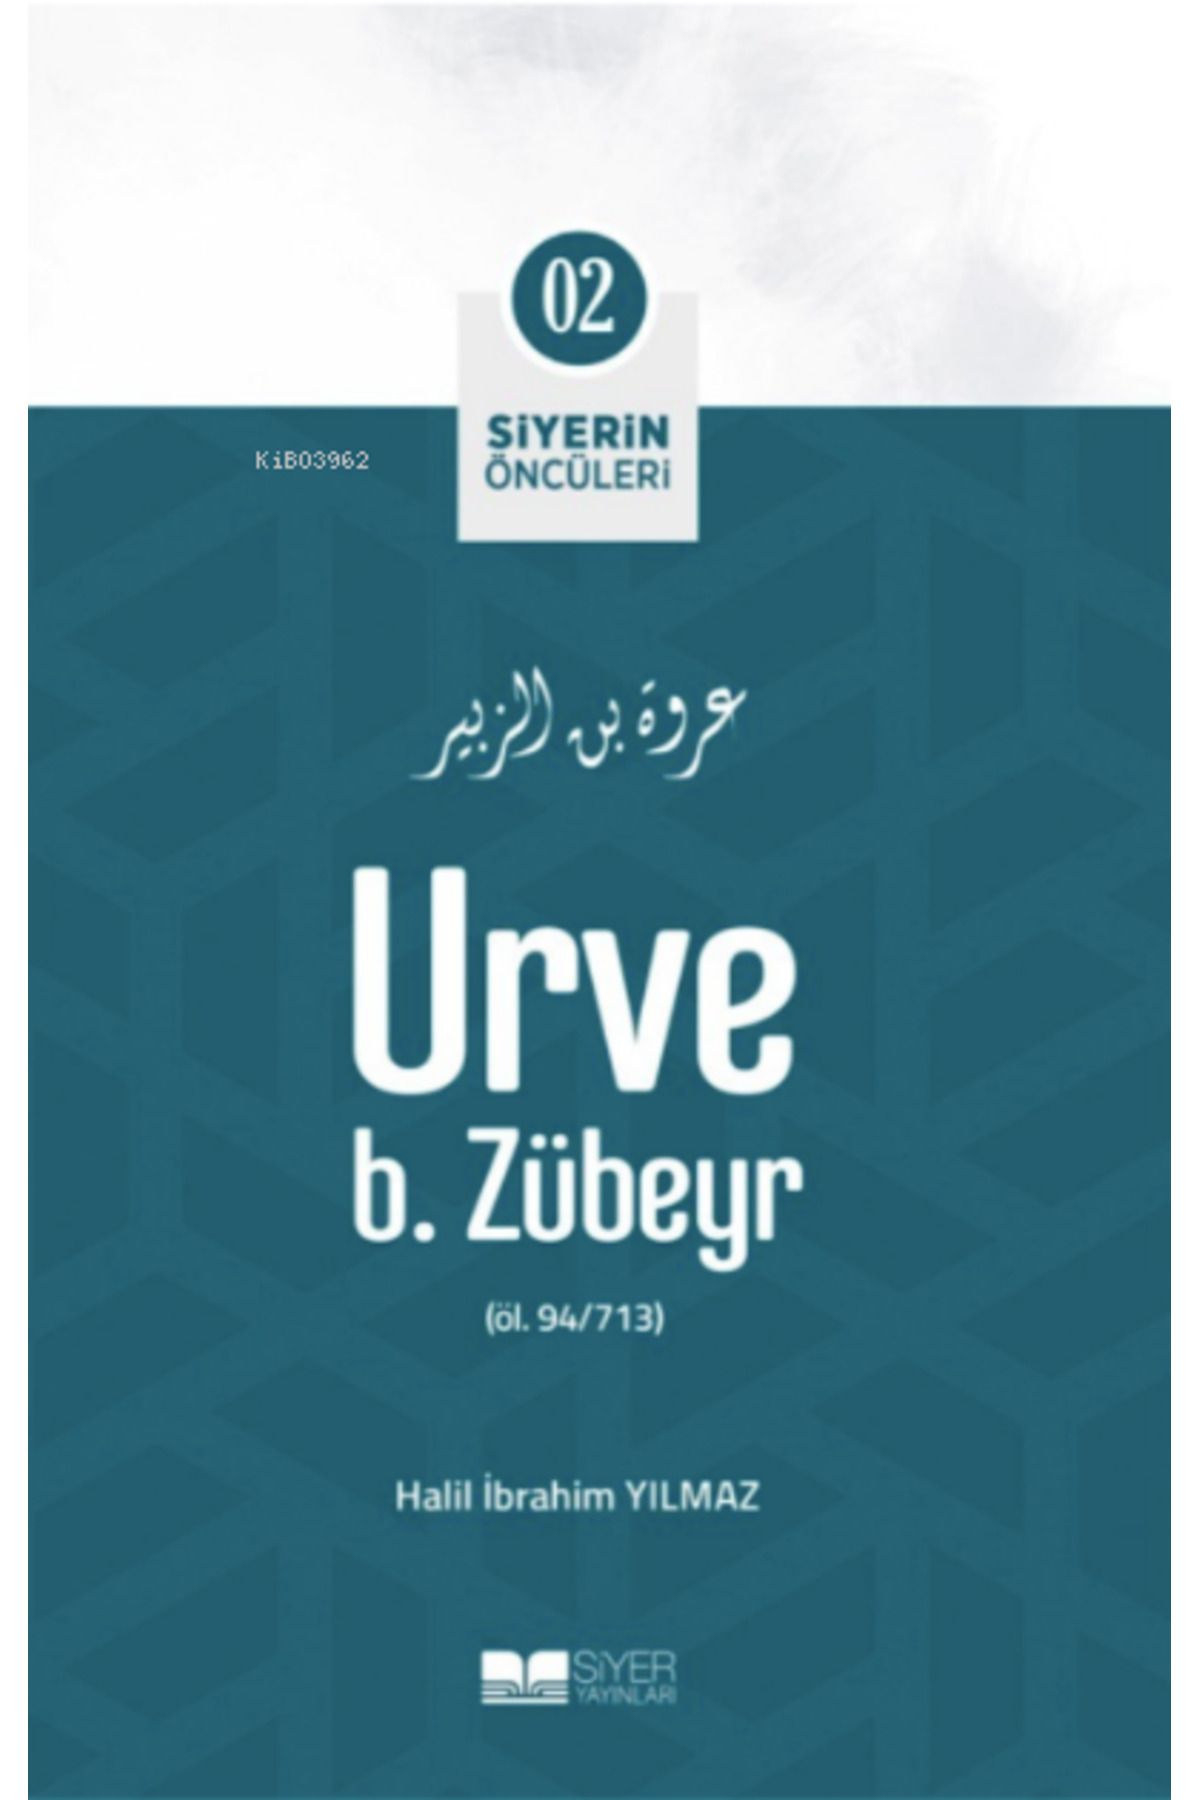 Siyer Yayınları Urve B Zübeyr; Siyerin Öncüleri 02